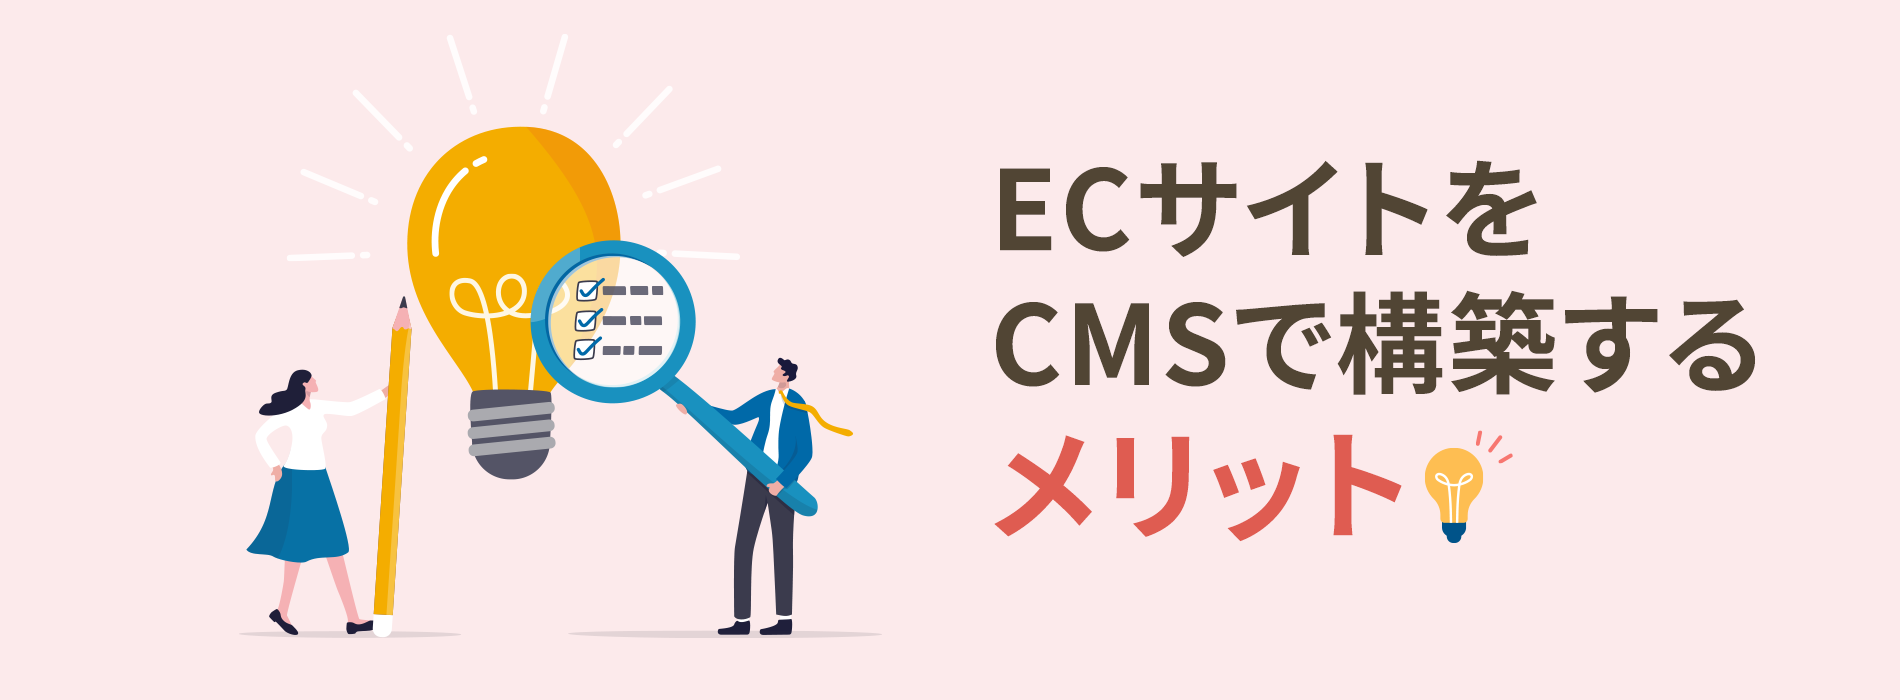 ECサイトをCMSで構築するメリット